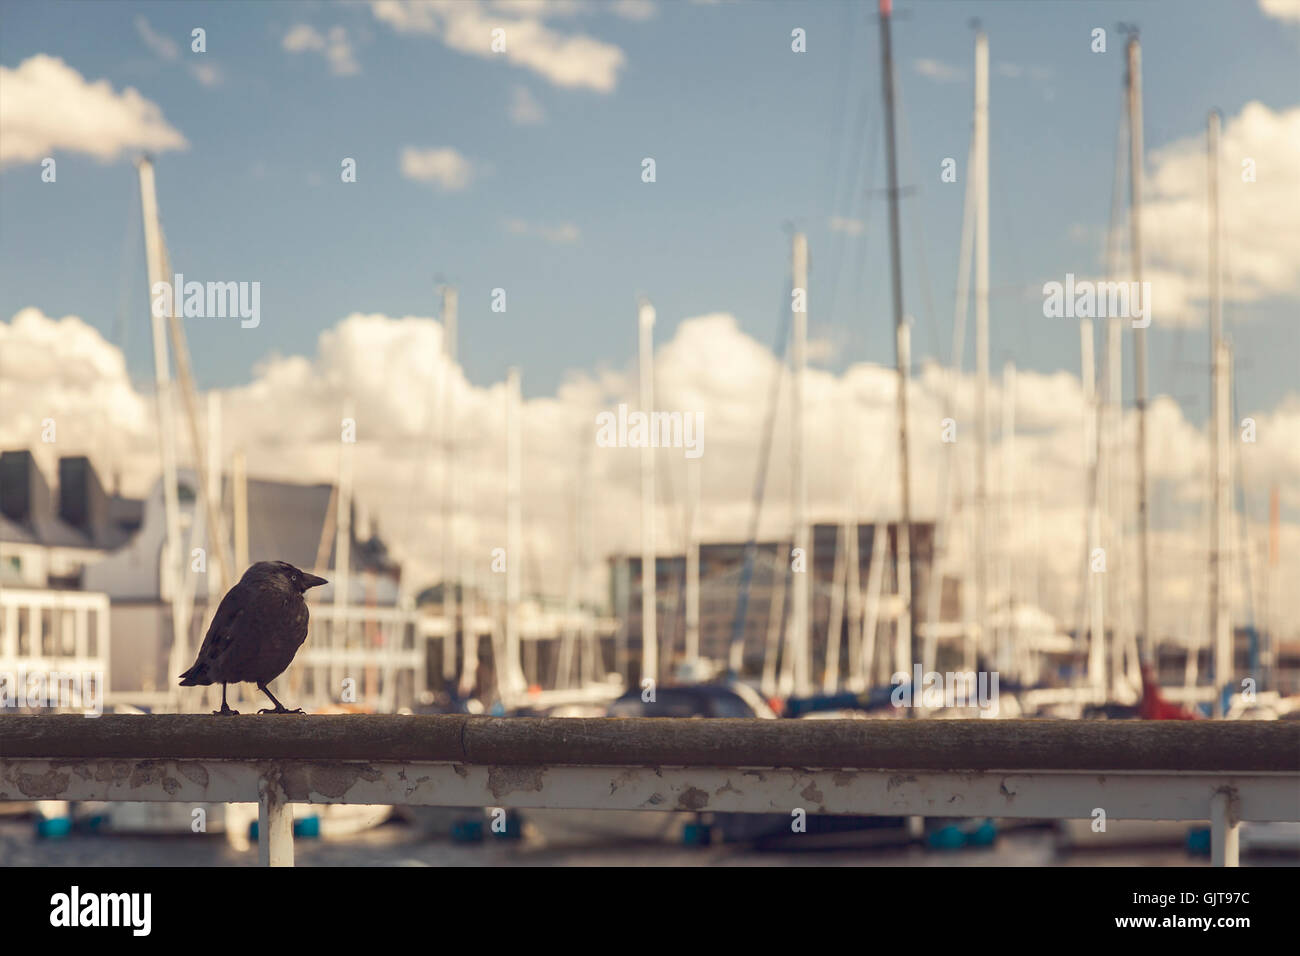 Bild von einem schwarzen Vogel thront auf einem Boot Marina Geländer. Stockfoto